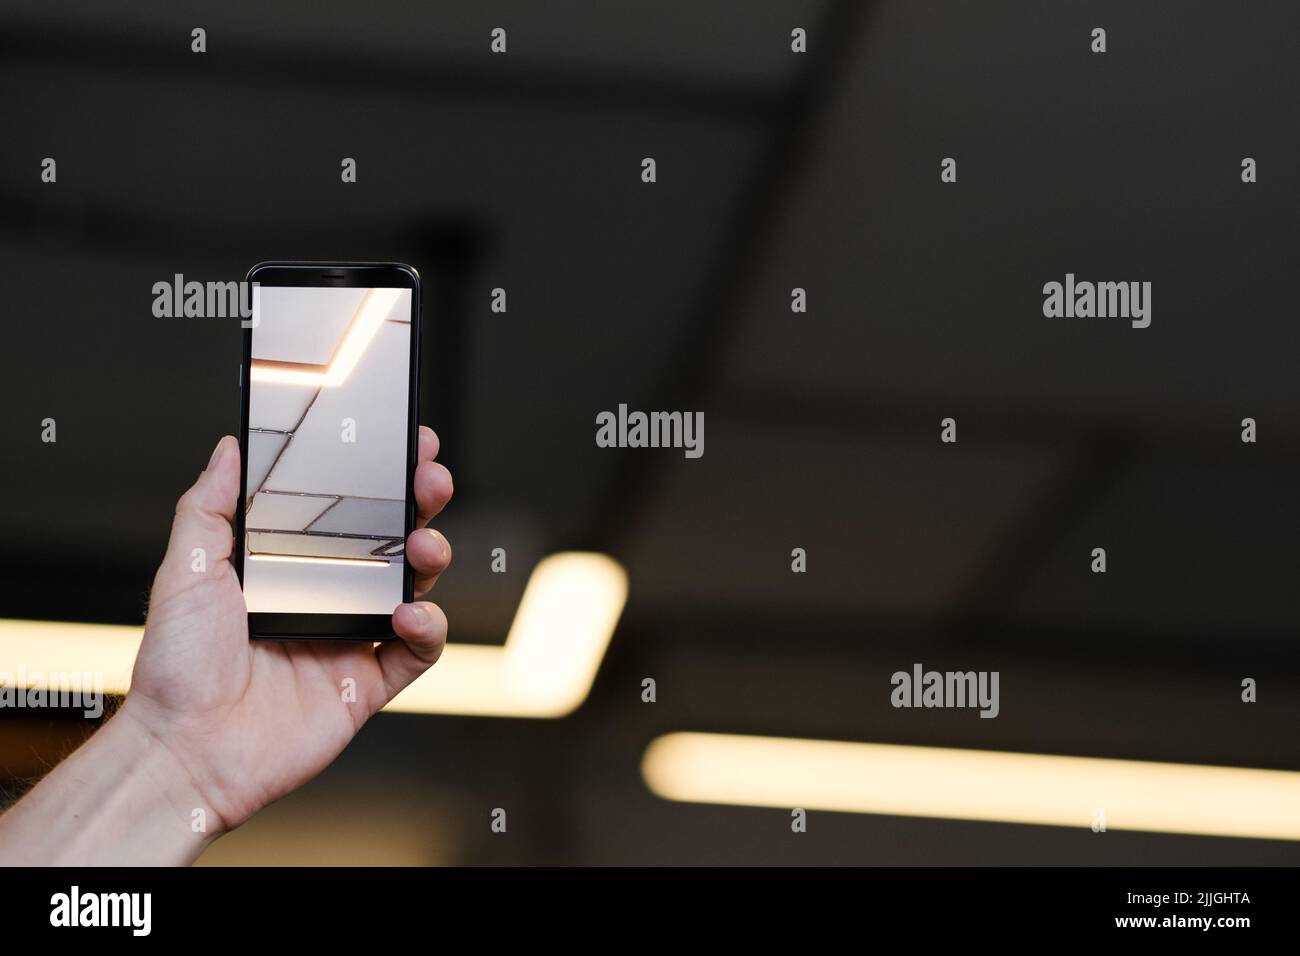 futuristica traccia illuminazione smartphone immagine Foto Stock